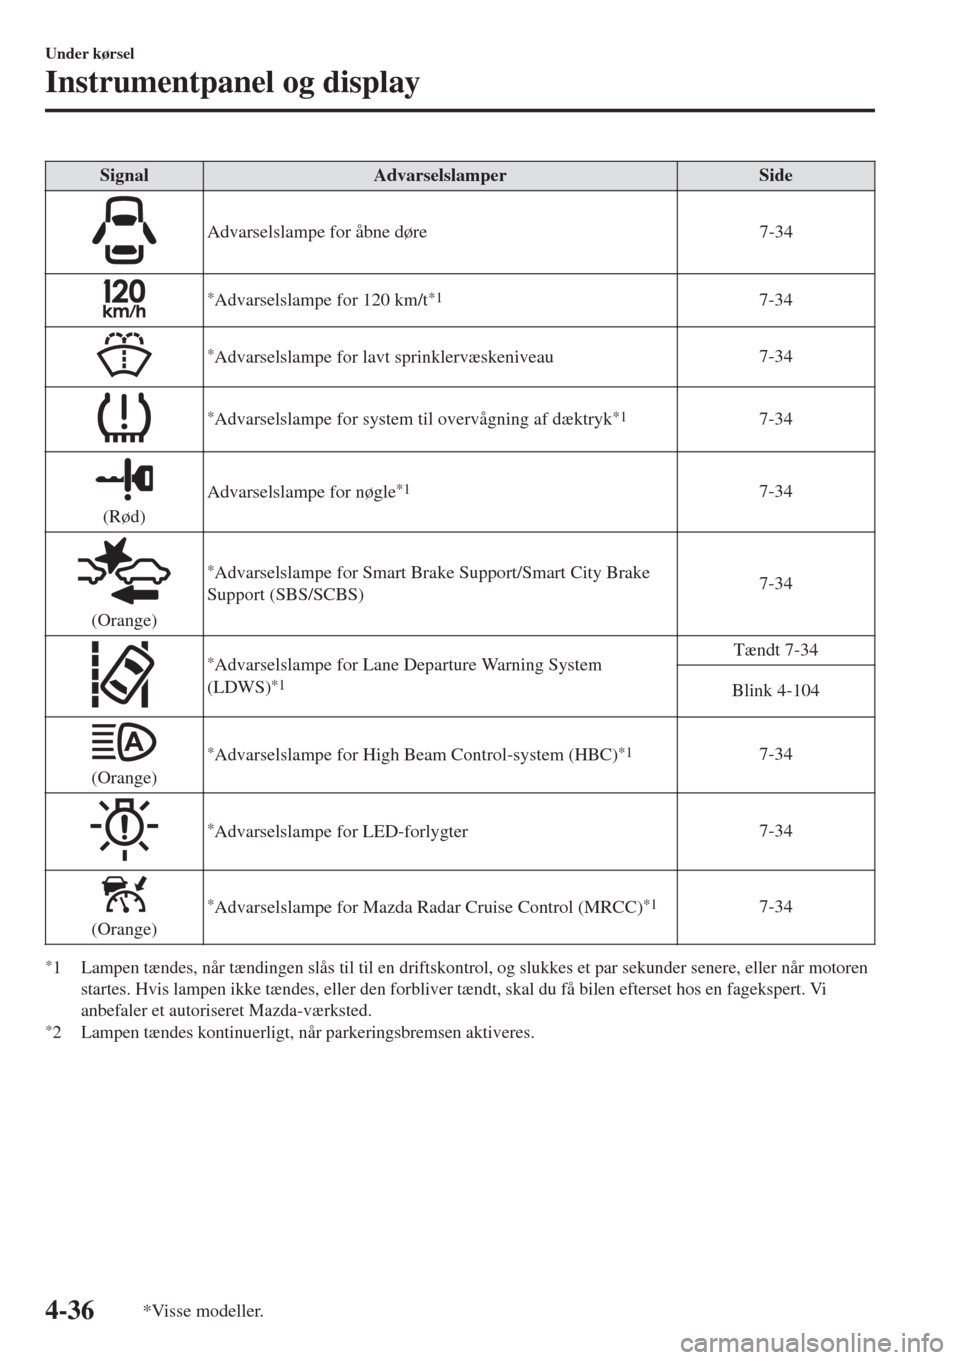 MAZDA MODEL CX-3 2015   Instruktionsbog (in Danish)  SignalAdvarselslamperSide
Advarselslampe for åbne døre 7-34
*Advarselslampe for 120 km/t*17-34
*Advarselslampe for lavt sprinklervæskeniveau7-34
*Advarselslampe for system til overvågning af dækt